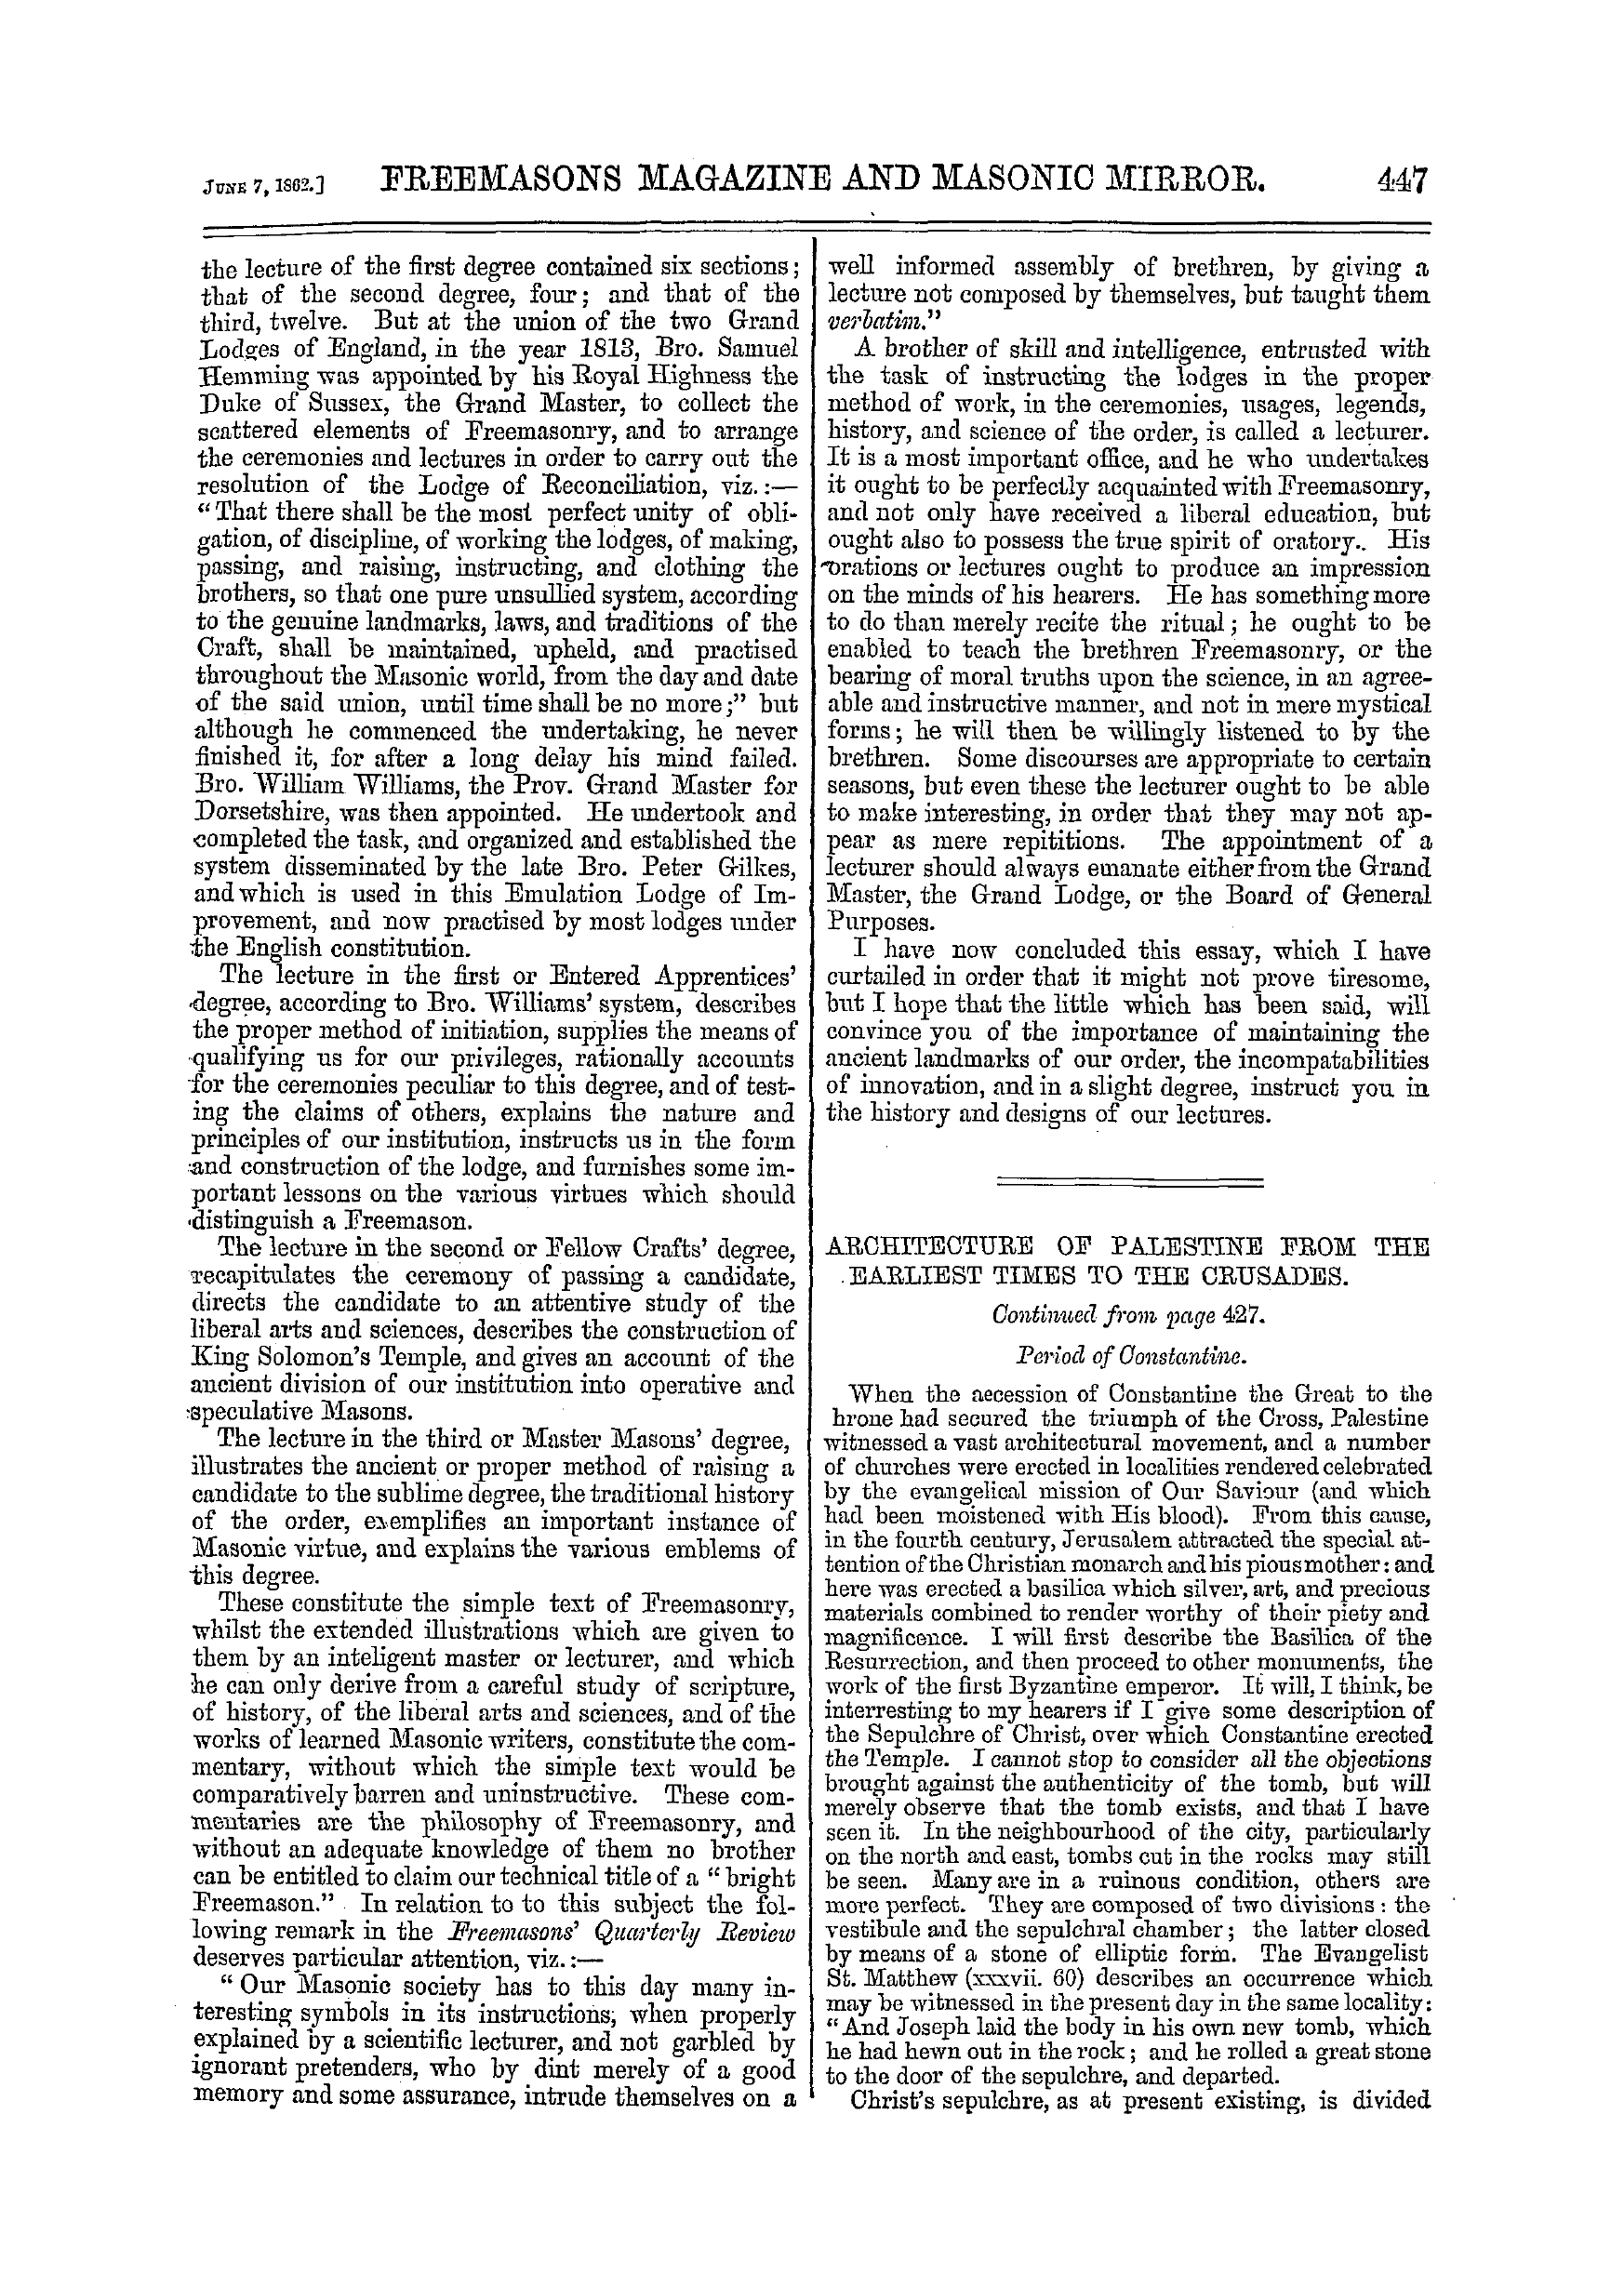 The Freemasons' Monthly Magazine: 1862-06-07 - The Landmarks Of Freemasonry.